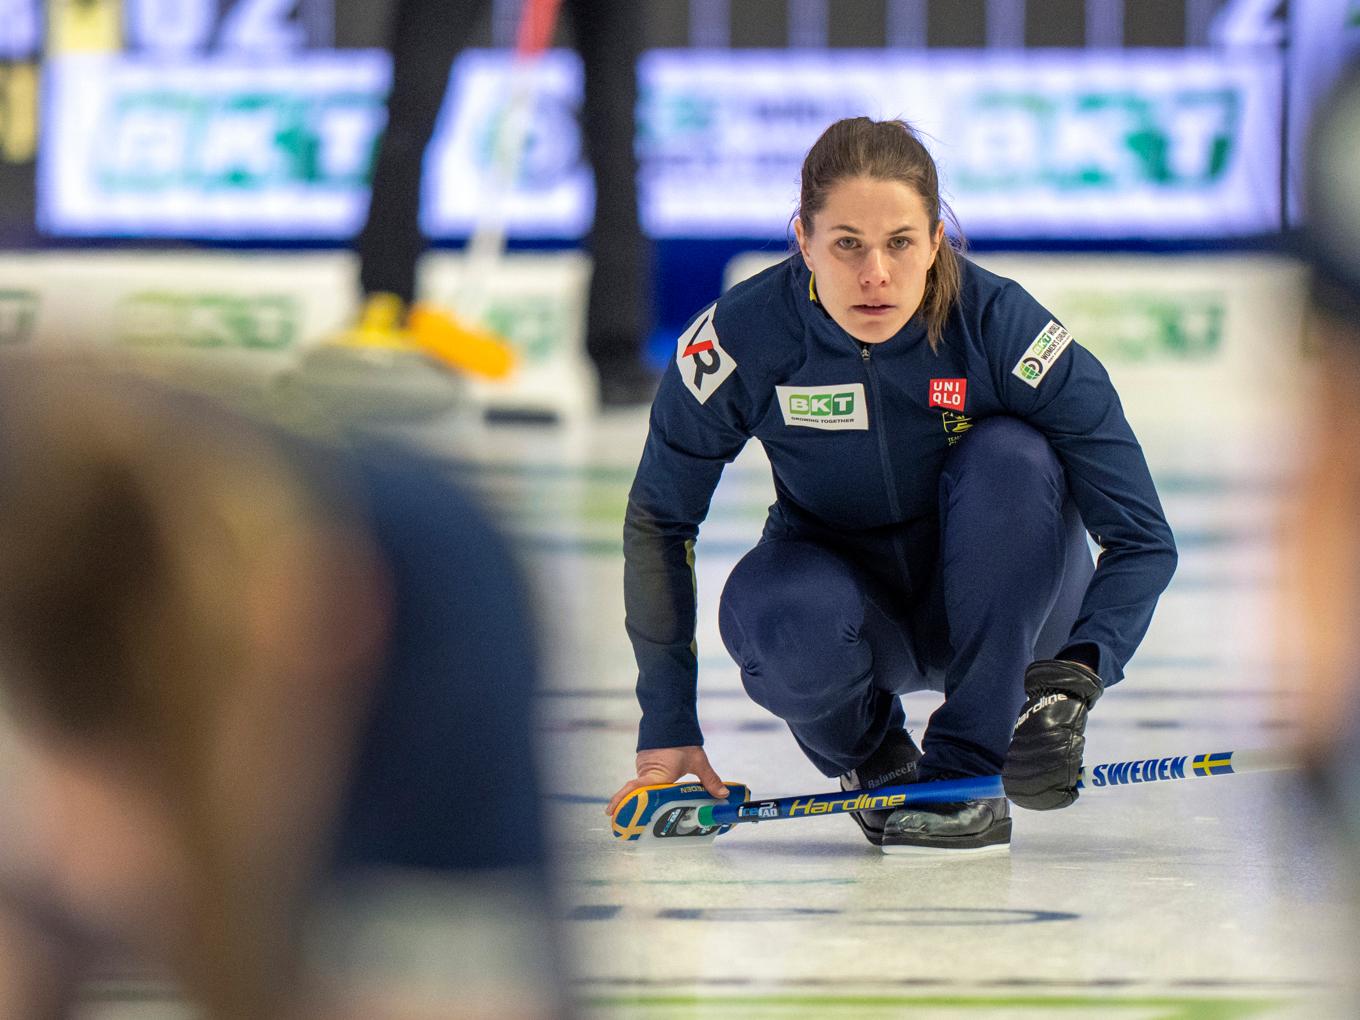 Skippern Anna Hasselborg och hennes lagkamrater åkte ut i kvartsfinal av curling-VM i Kanada. Foto: Frank Gunn/AP/TT